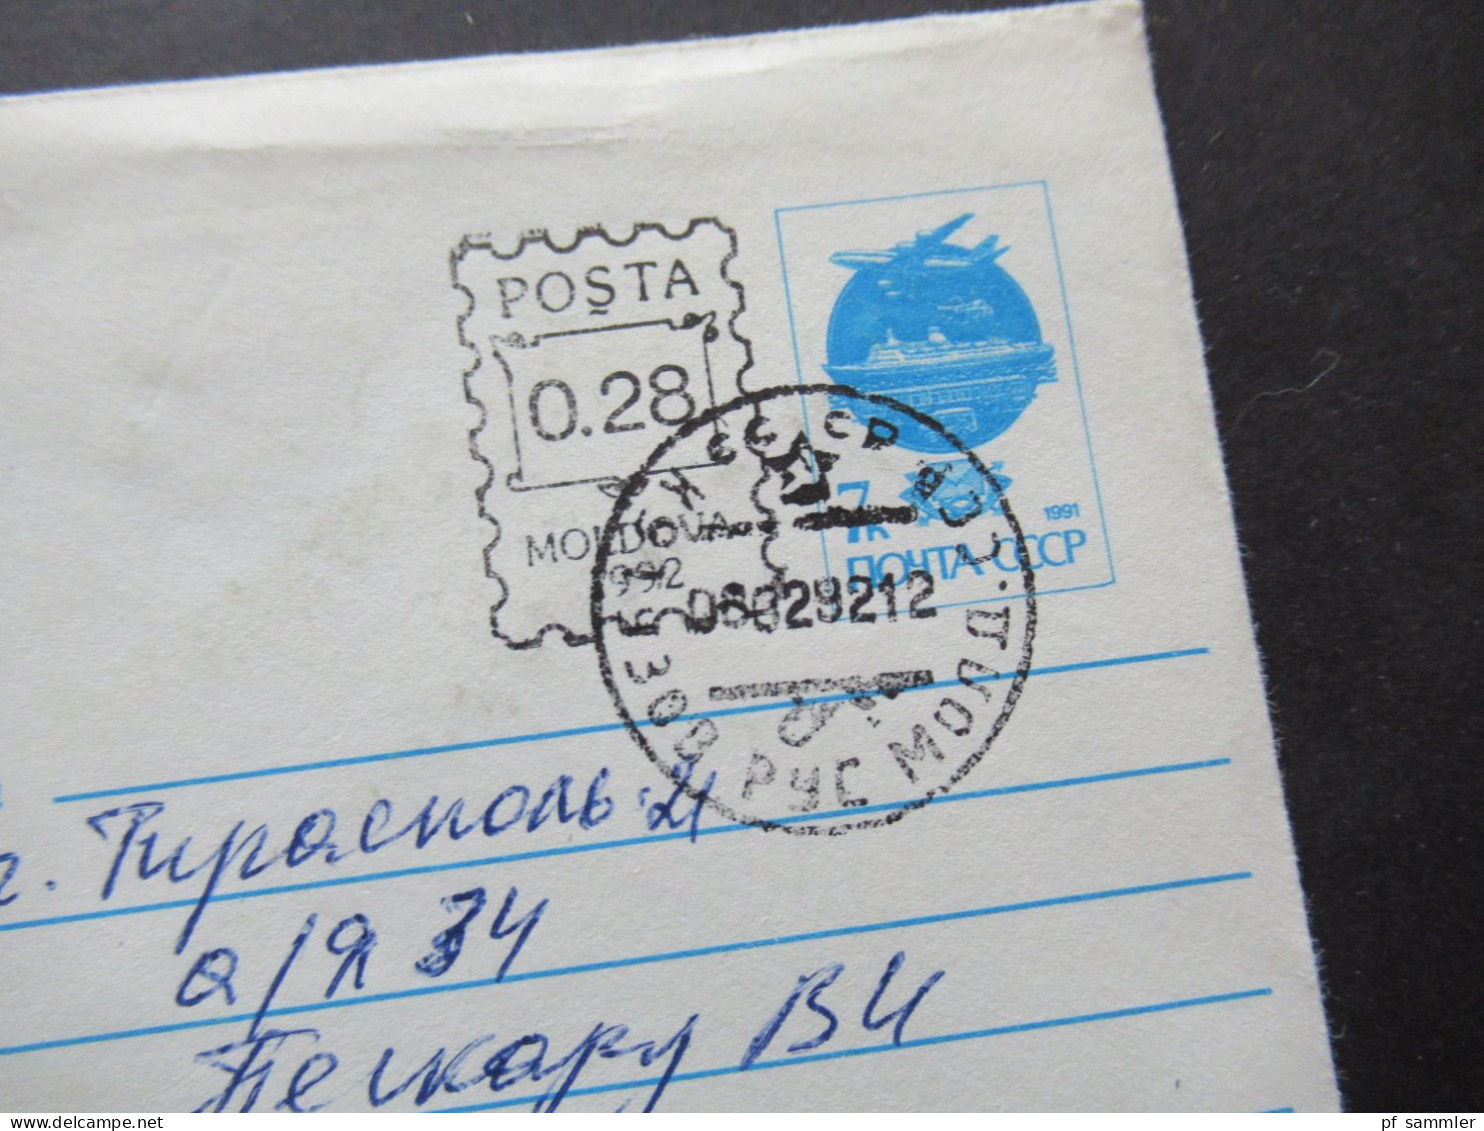 1992 Moldawien (Moldau) Belege Posten 14 Belege! UdSSR Ganzsachen / Umschläge mit Überdruck / Stempel Moldova